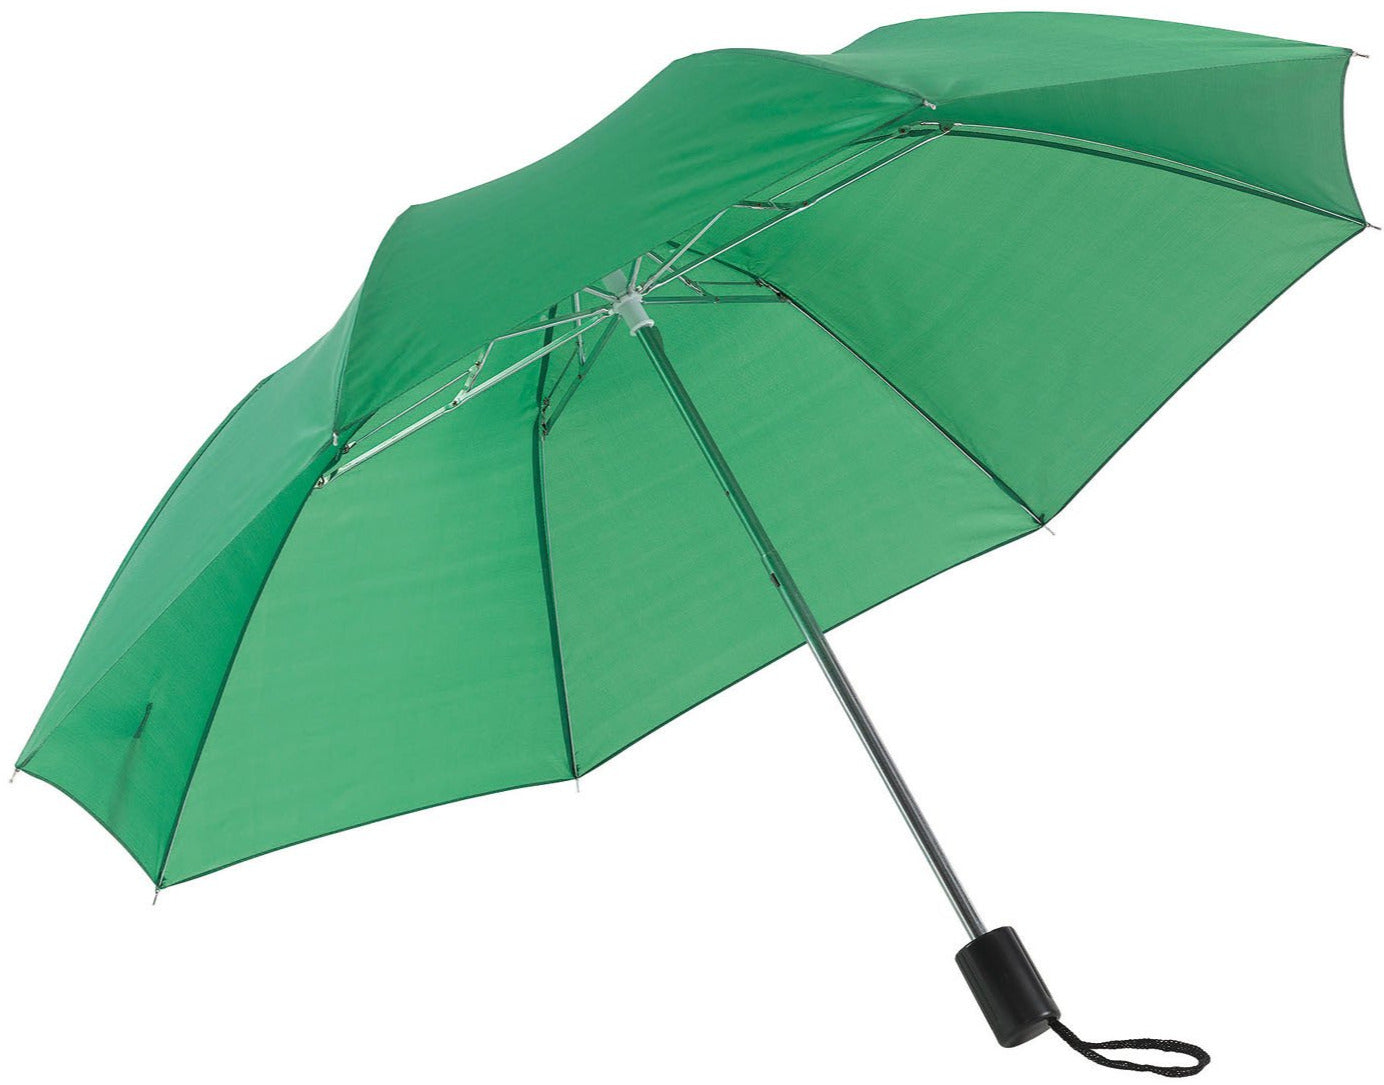 Πράσινη (μεσαίο) Παιδική Ομπρέλα Βροχής, Σπαστή, Απλή, και σε πολλά χρώματα (κωδικός 01-02-0209).